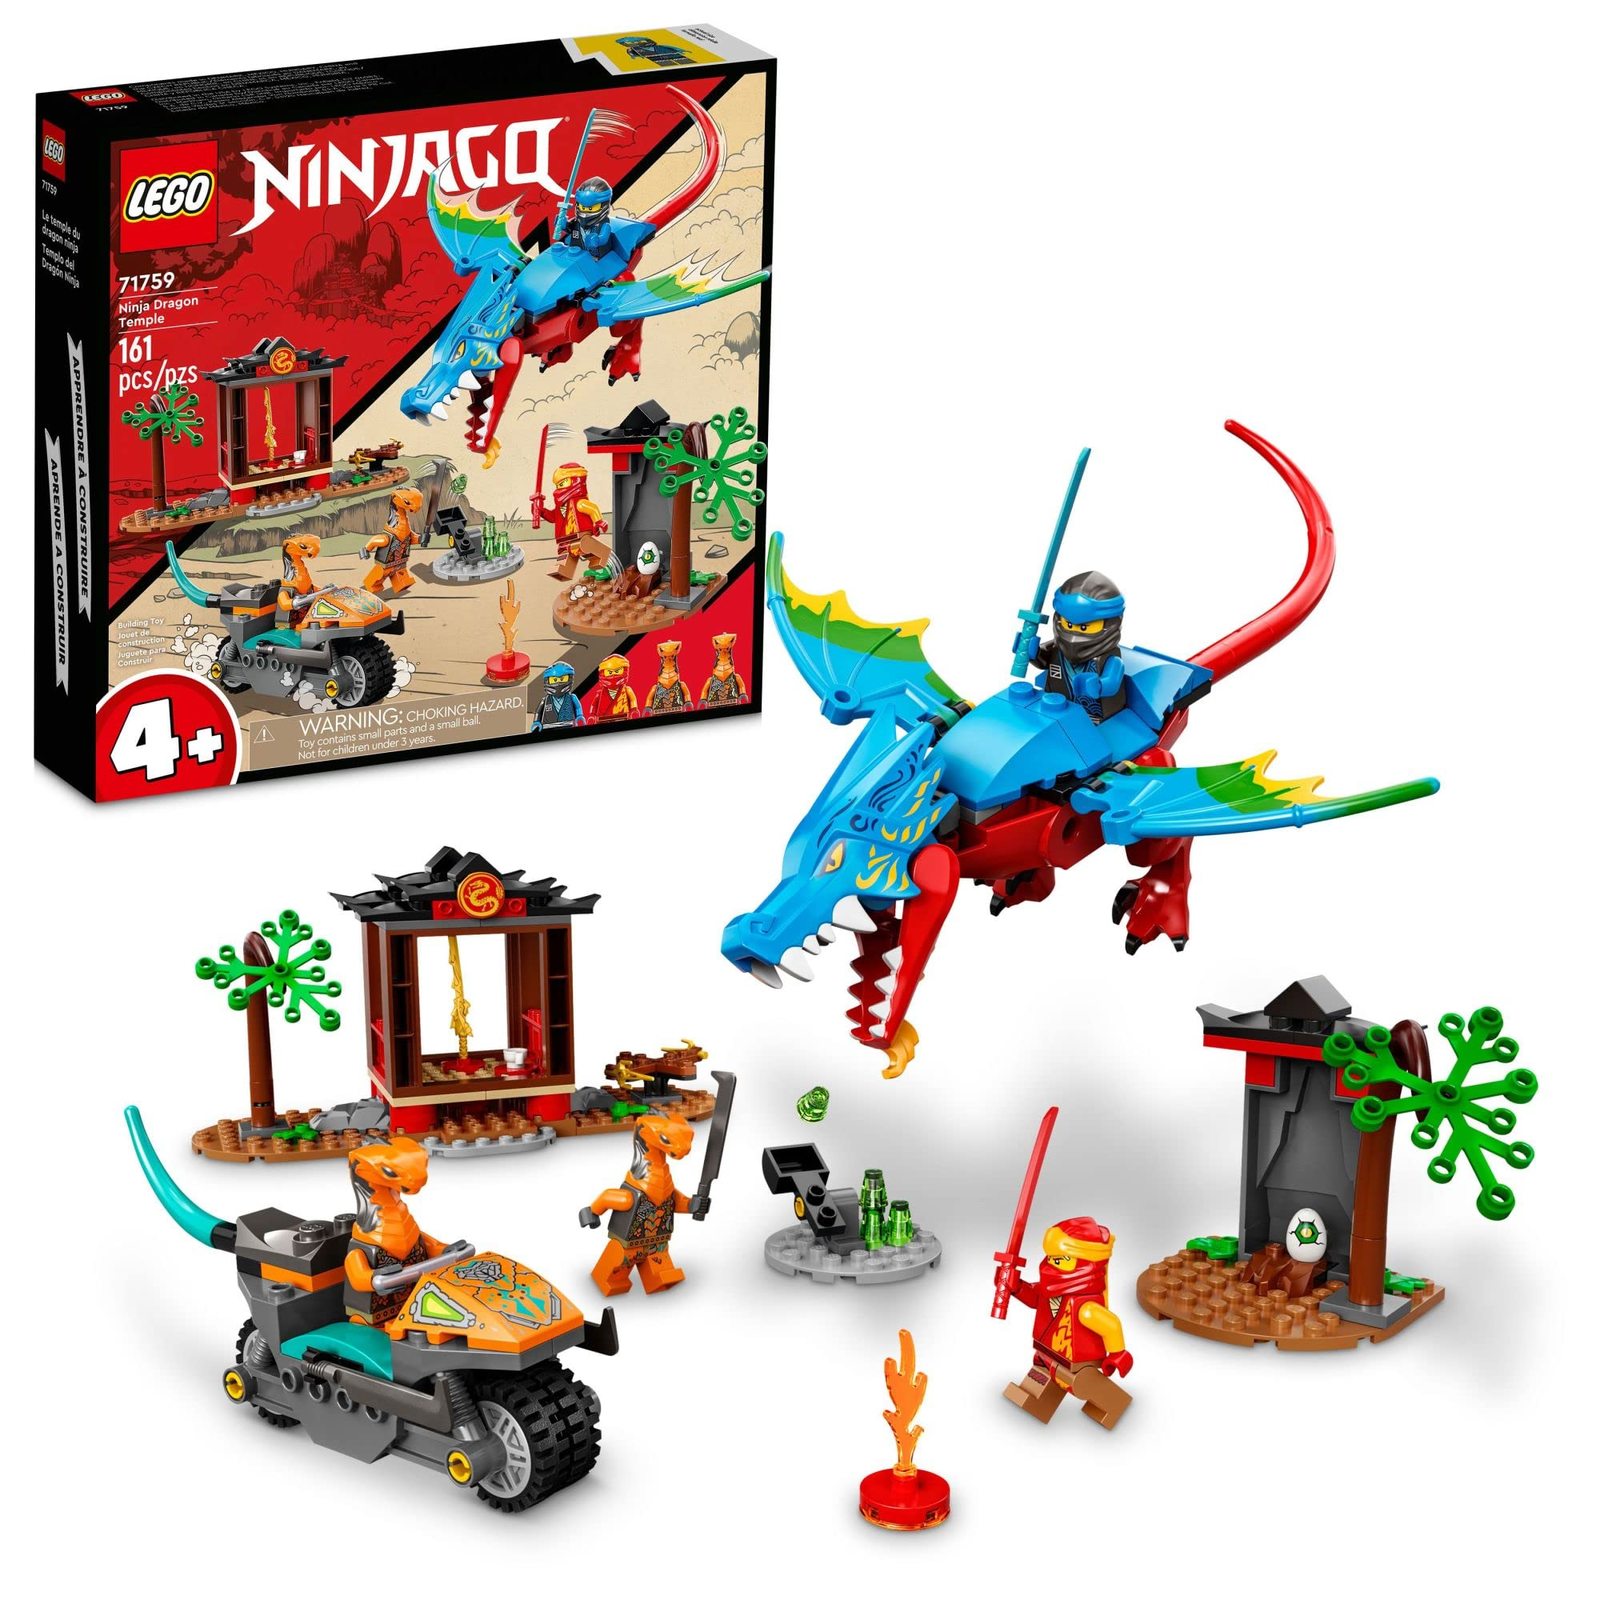 LEGO NINJAGO Ninja Dragon Temple Set 71759 with Toy Motorcycle, Kai, NYA and Sna - $40.84